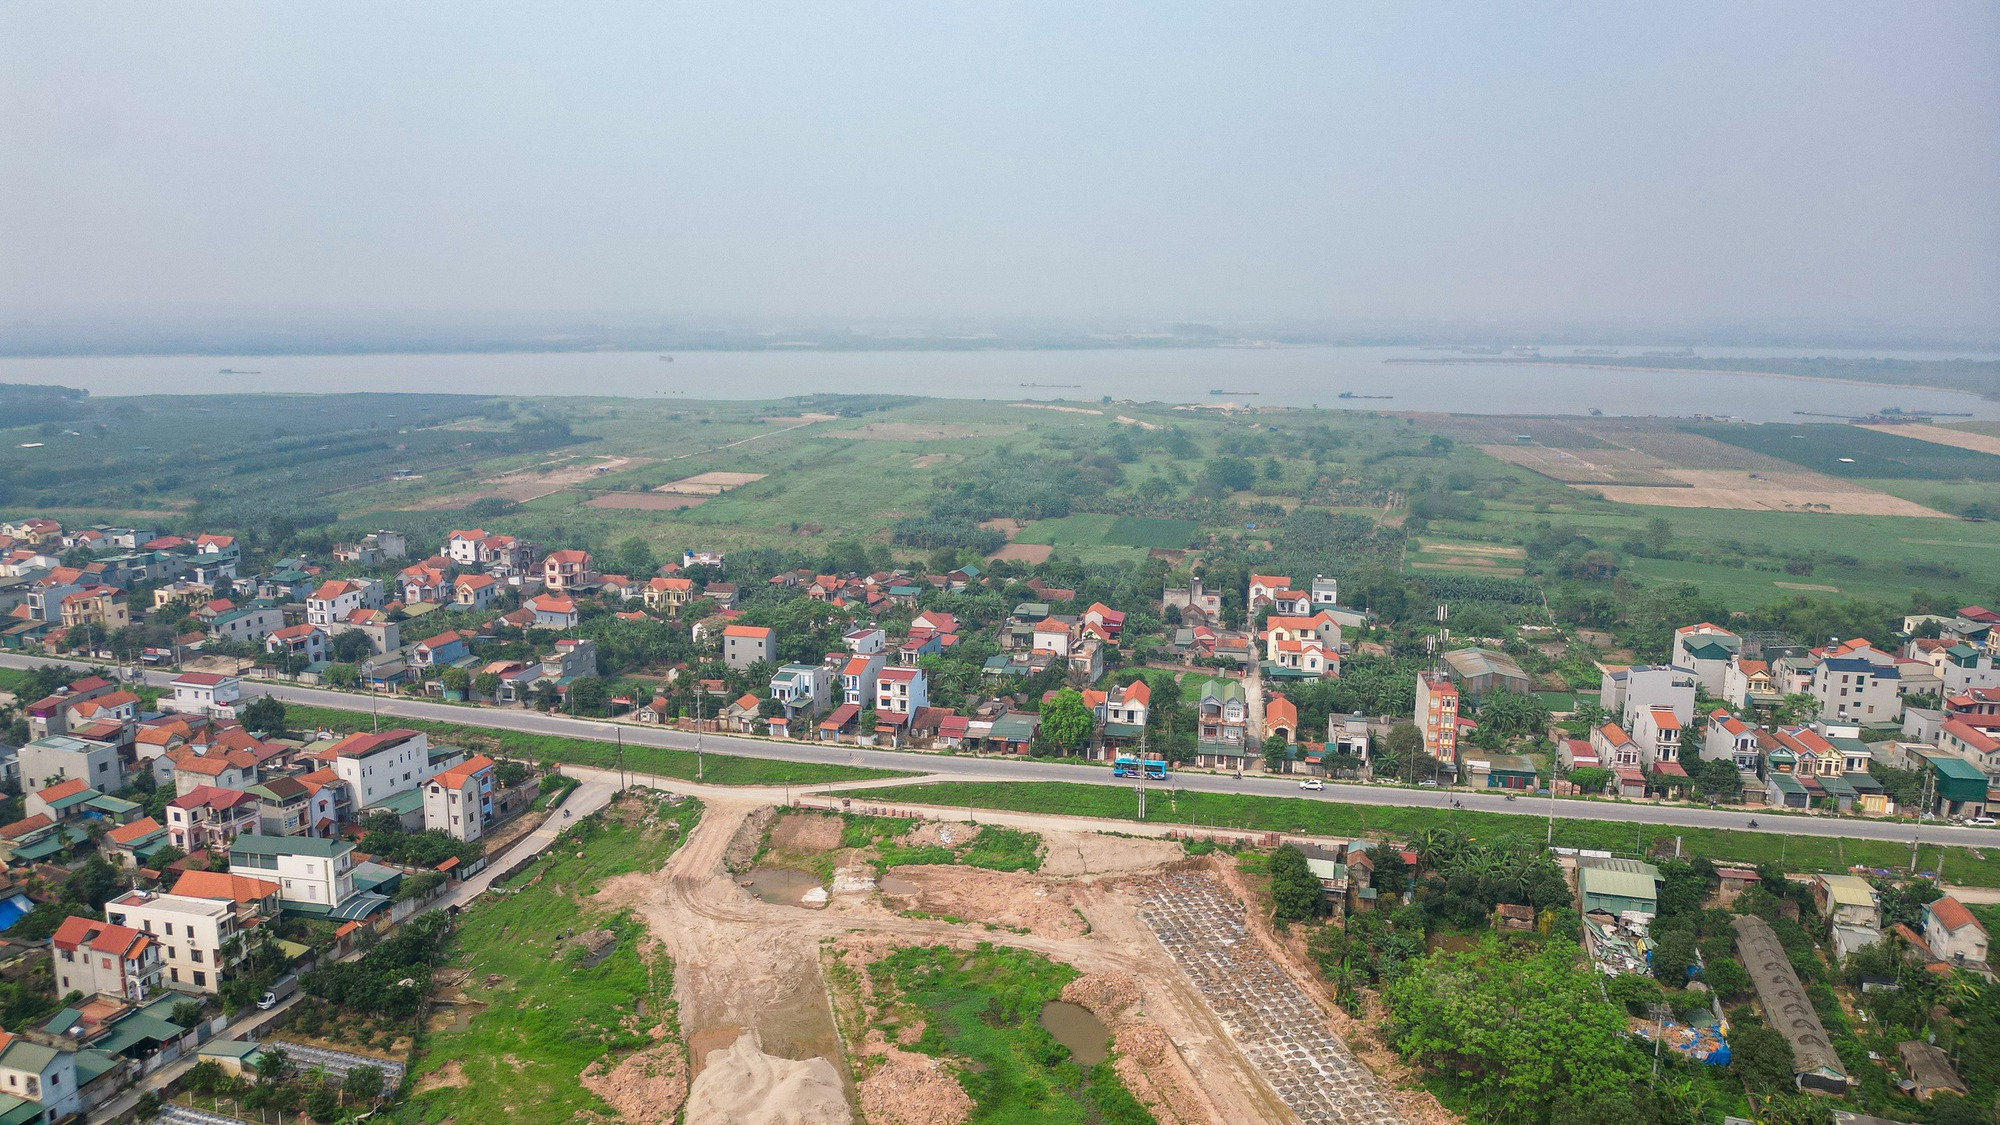 Toàn cảnh vị trí xây dựng cầu Hồng Hà vượt sông Hồng trị giá gần 10.000 tỉ đồng- Ảnh 2.